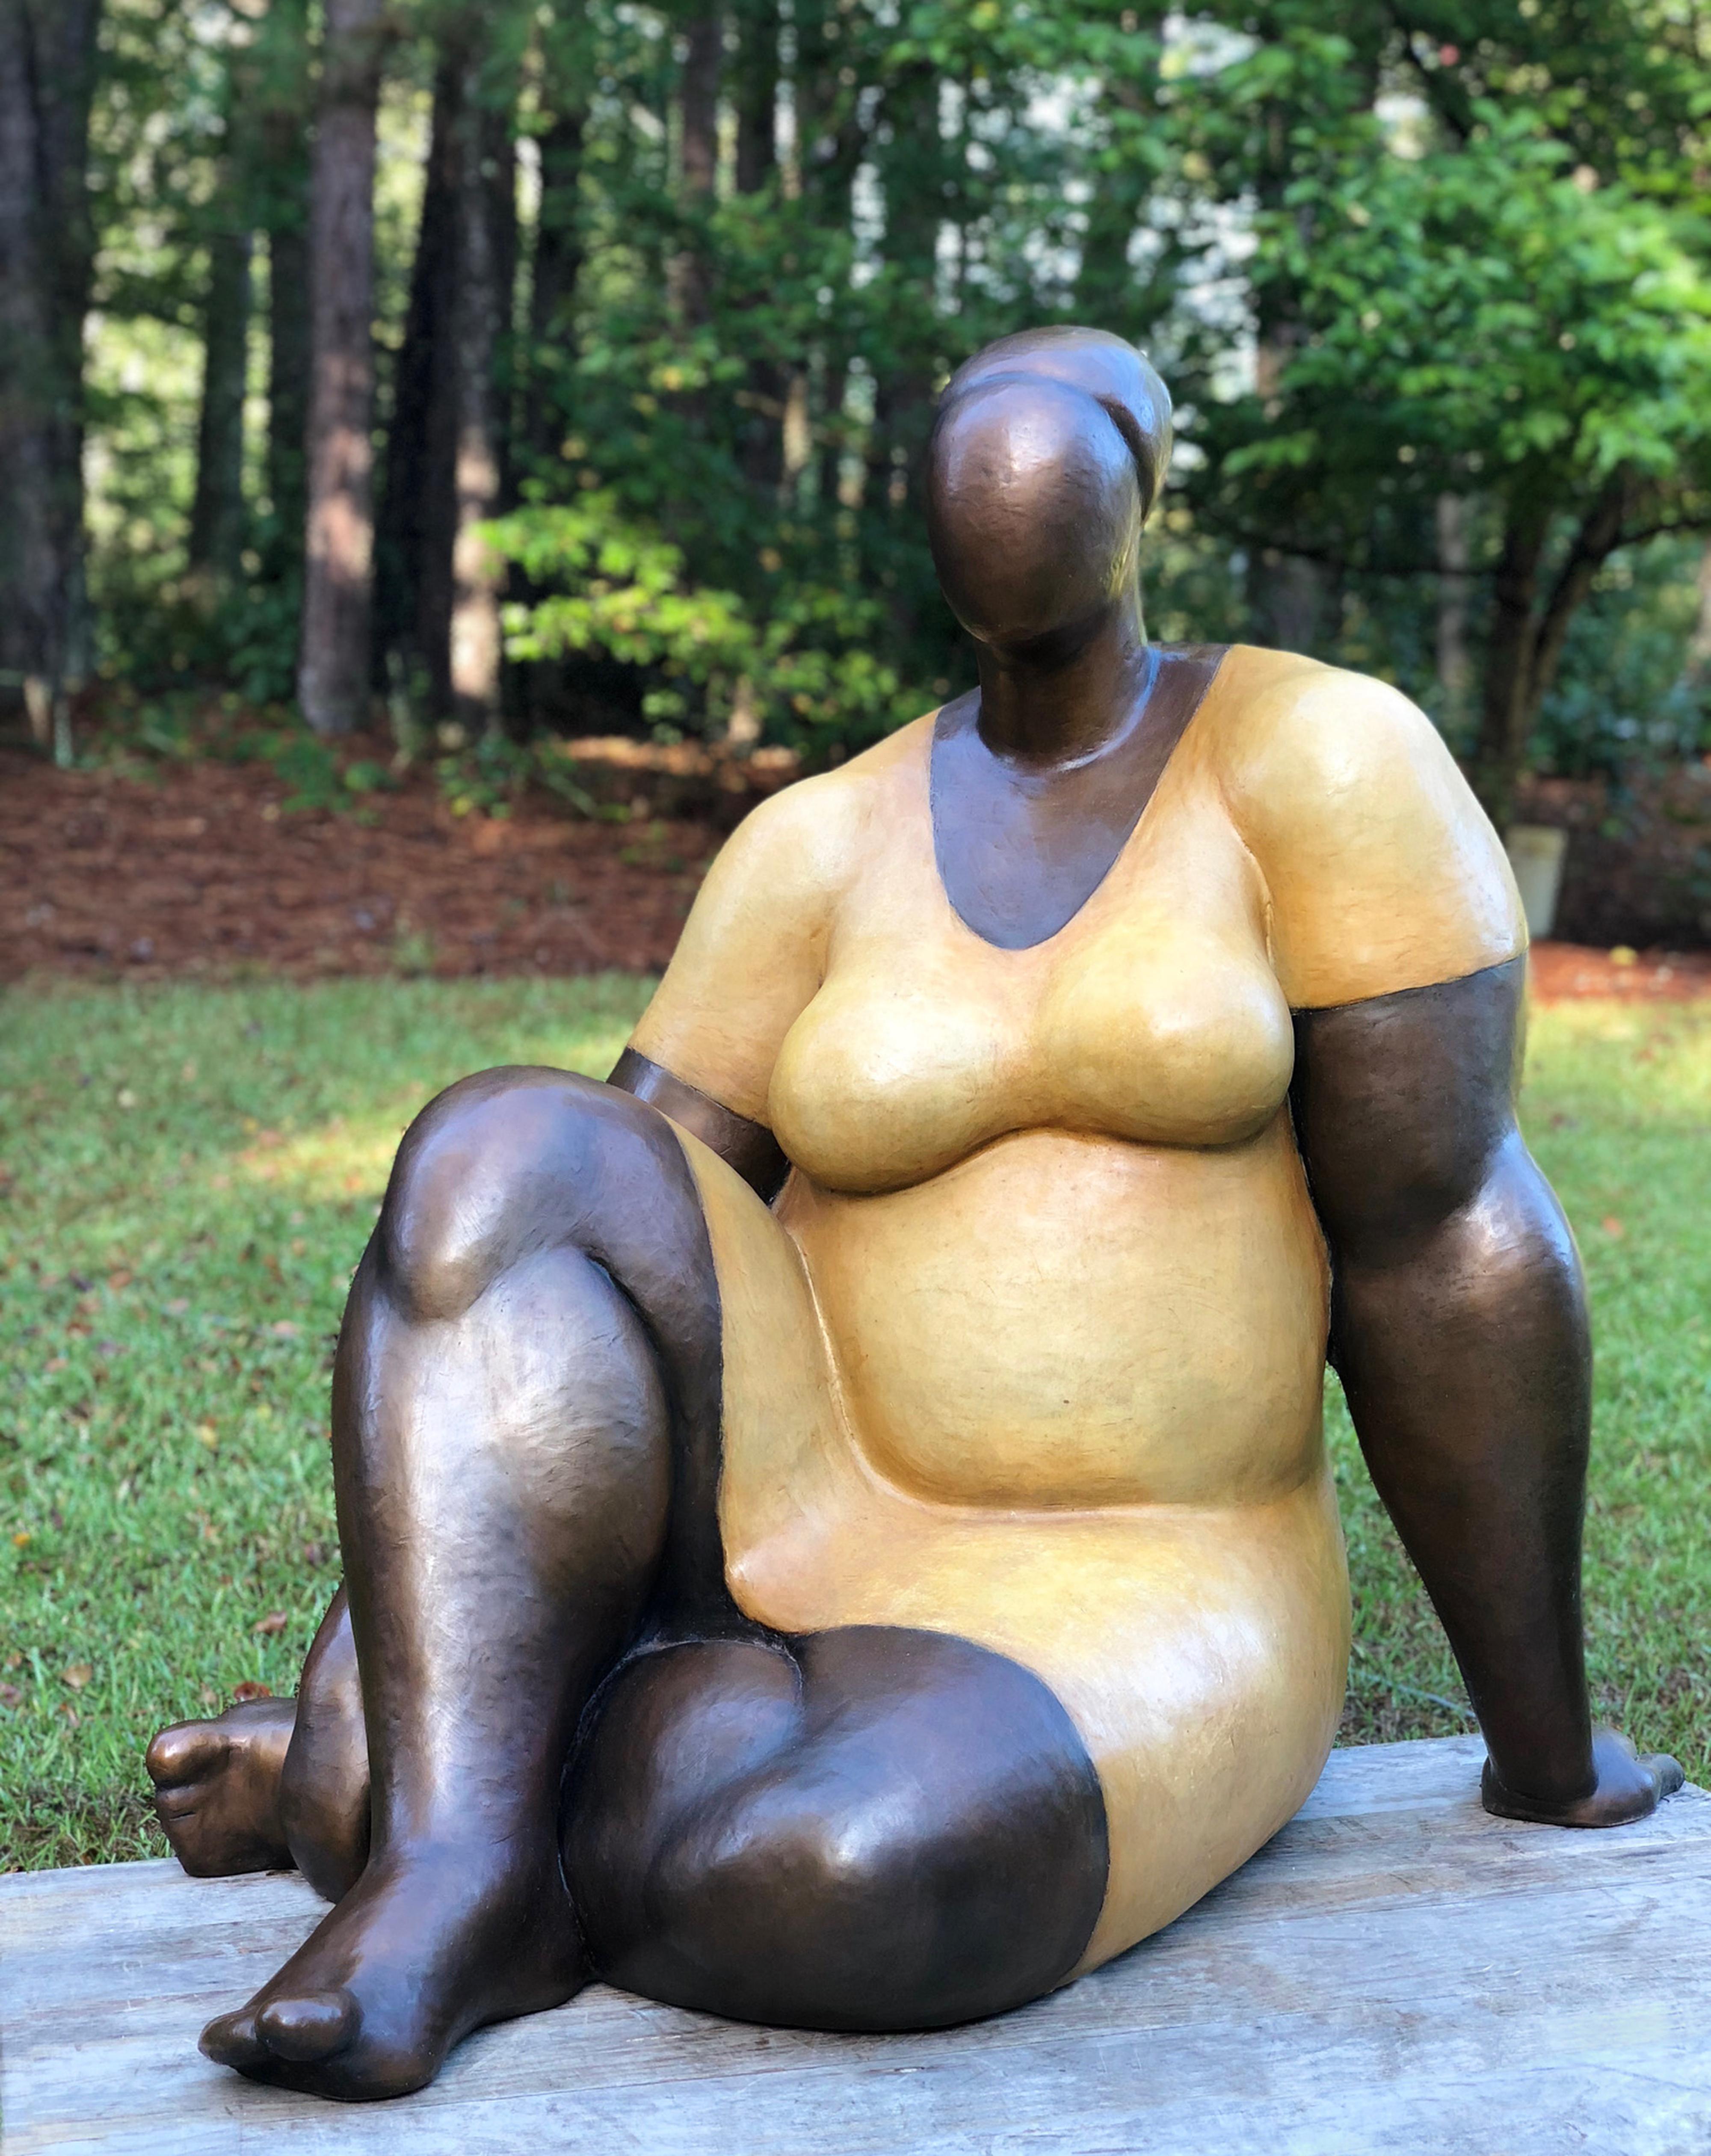 Escultura de bronce fundido "Tamaño de una damisela" con acabado patinado y lacado